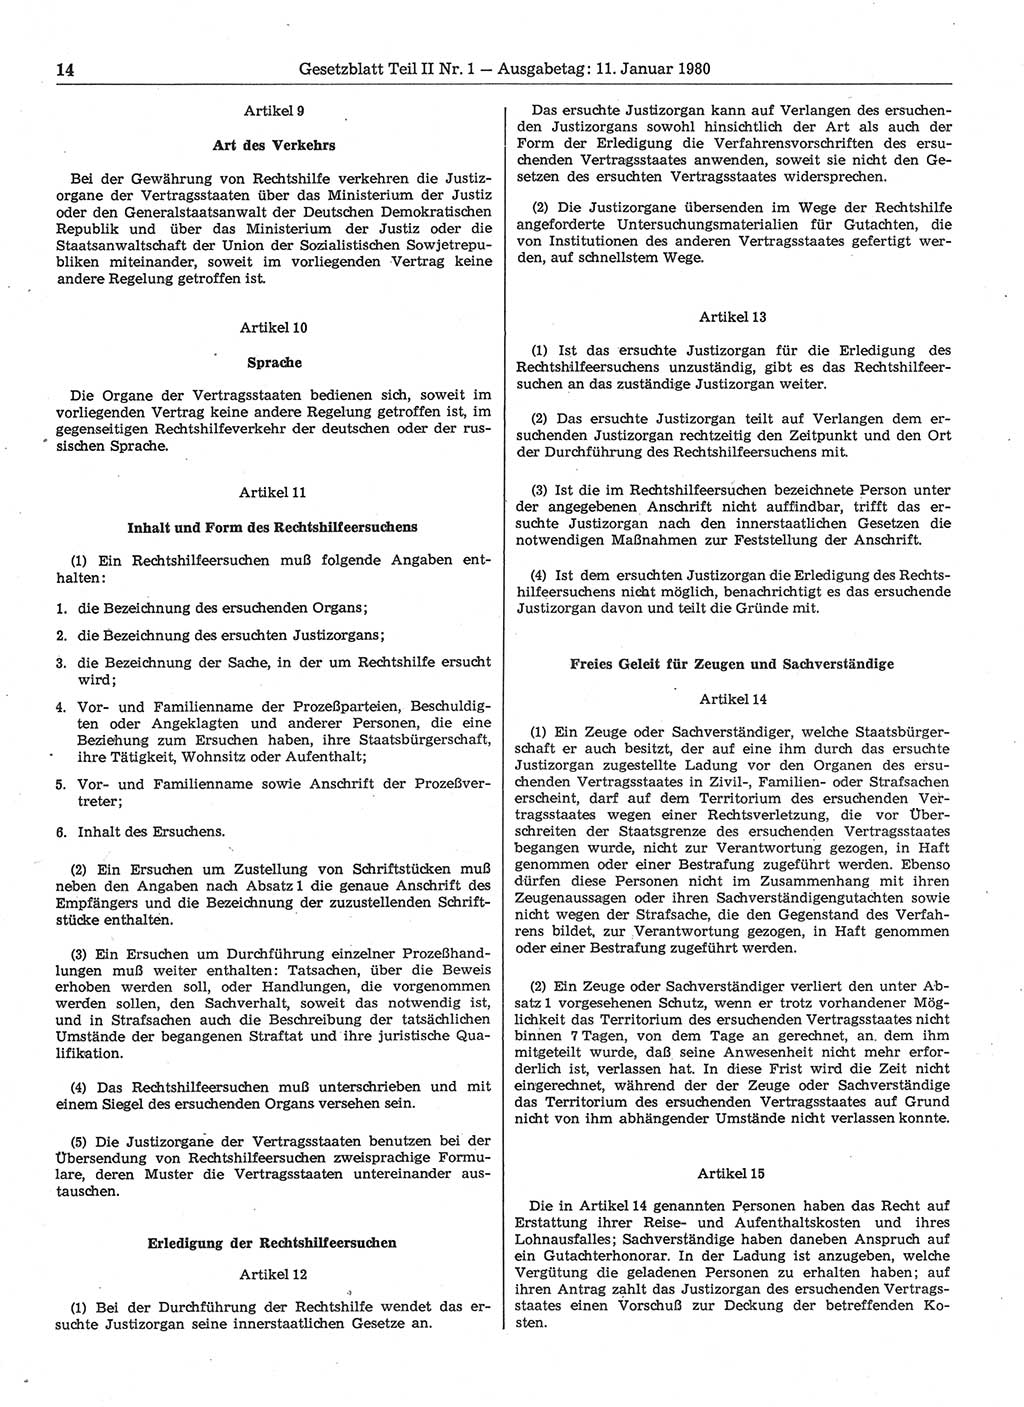 Gesetzblatt (GBl.) der Deutschen Demokratischen Republik (DDR) Teil ⅠⅠ 1980, Seite 14 (GBl. DDR ⅠⅠ 1980, S. 14)